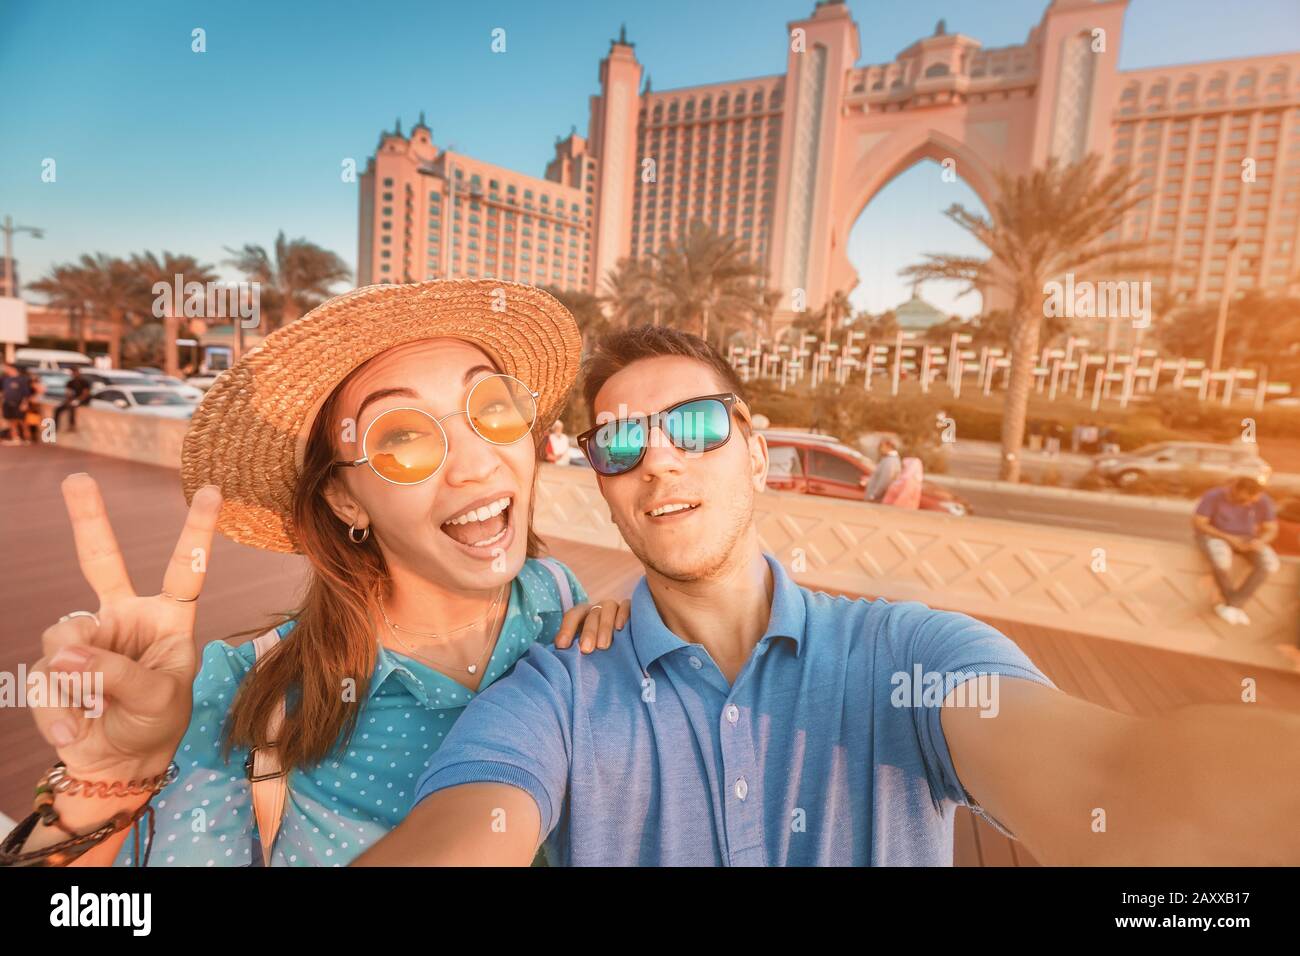 Un couple amoureux est arrivé pour leur lune de miel à Dubaï et prend un selfie en face de leur hôtel sur l'île de Palm Jumeirah Banque D'Images